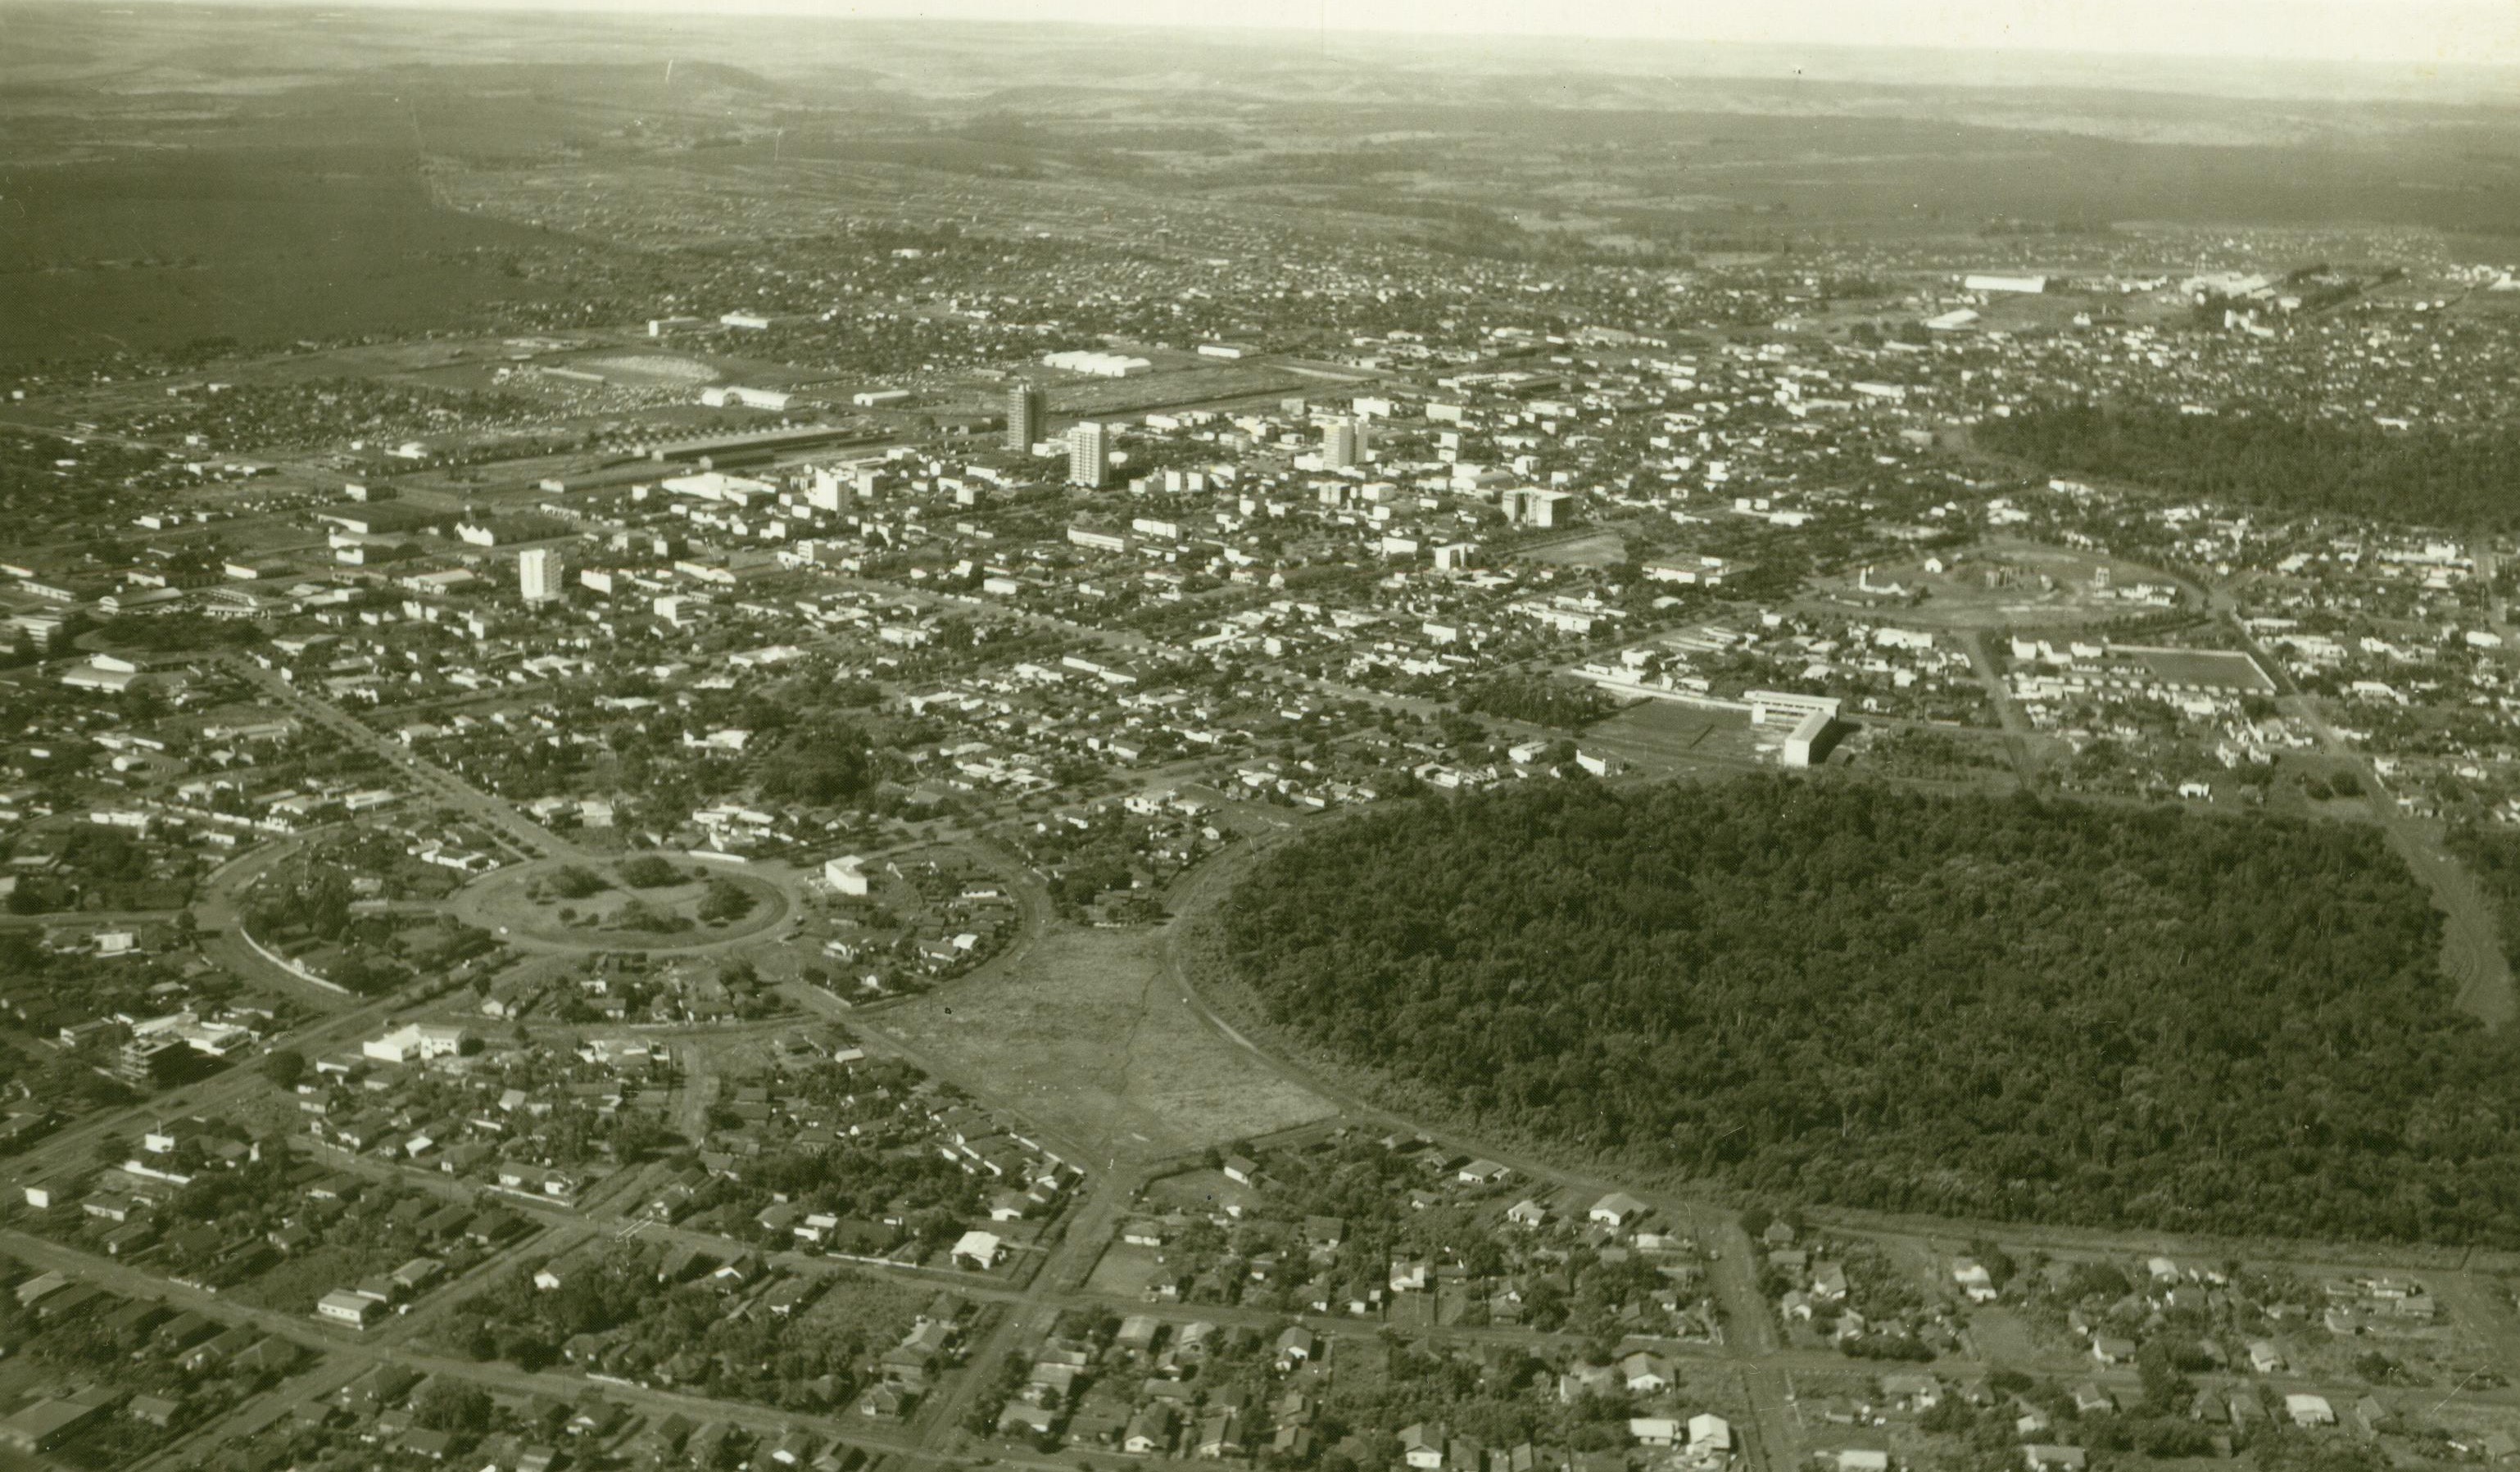 Vista aérea de Maringá - Início dos anos 1960